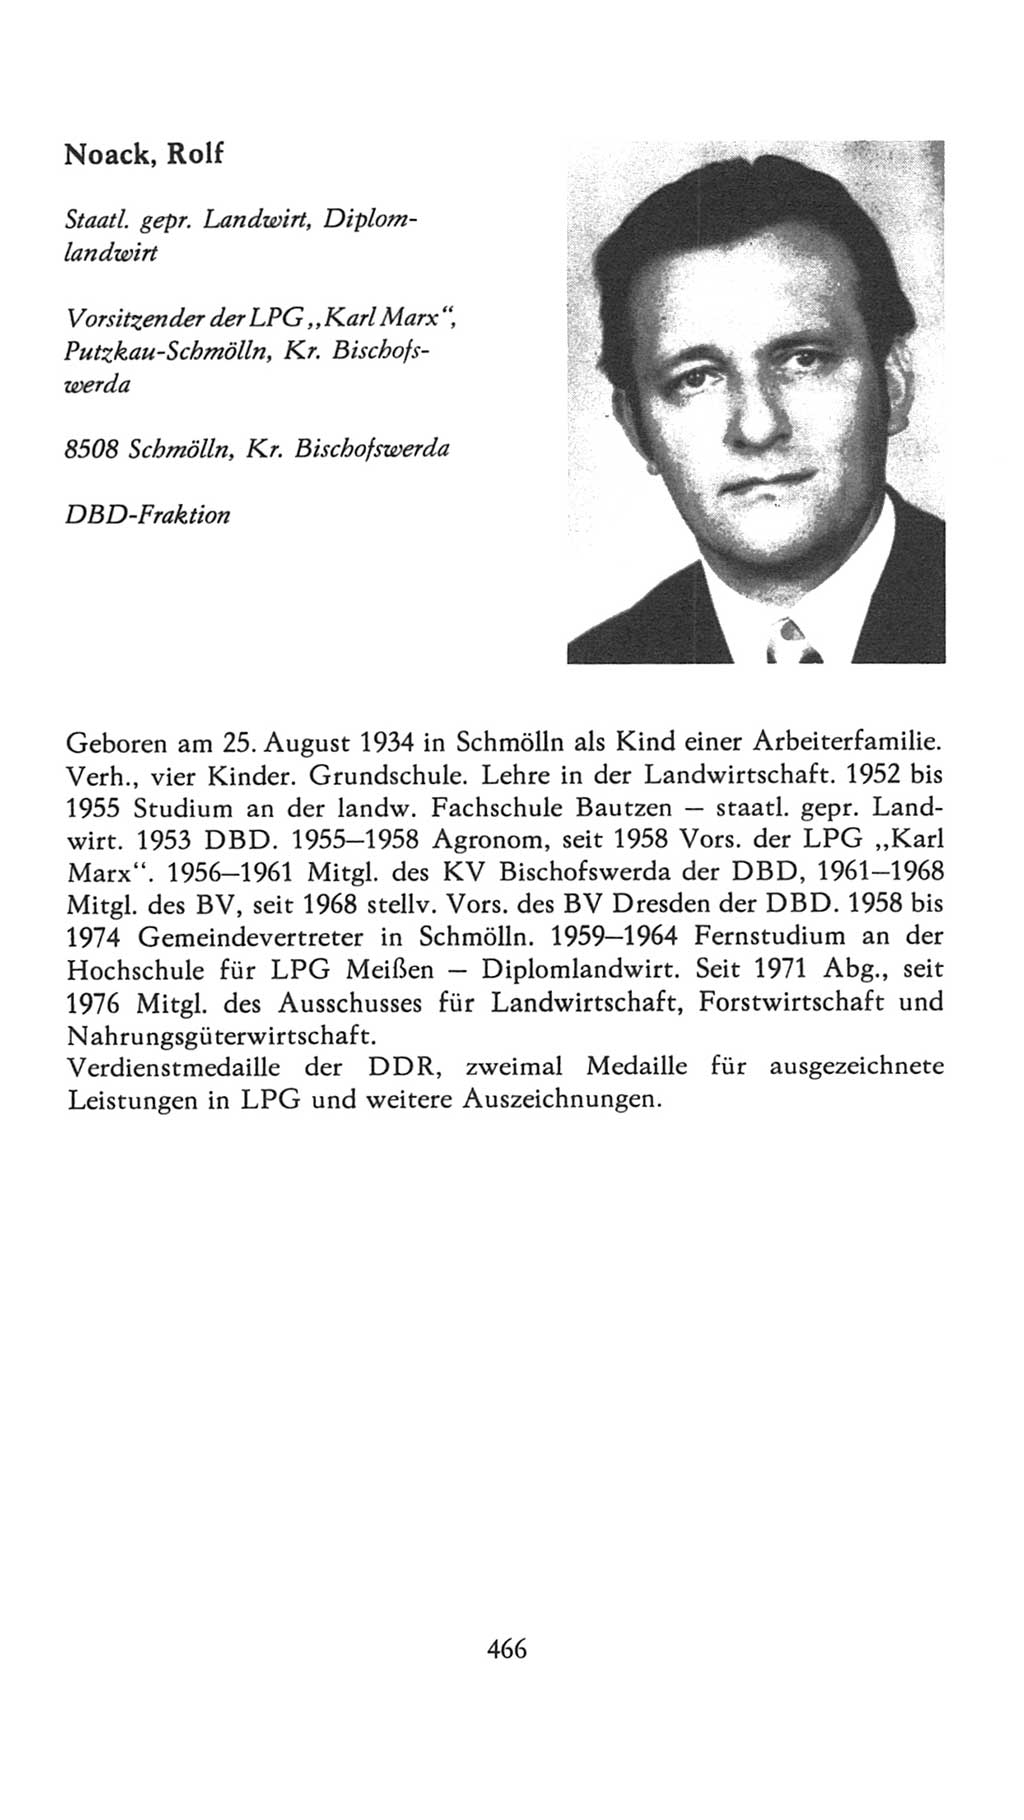 Volkskammer (VK) der Deutschen Demokratischen Republik (DDR), 7. Wahlperiode 1976-1981, Seite 466 (VK. DDR 7. WP. 1976-1981, S. 466)